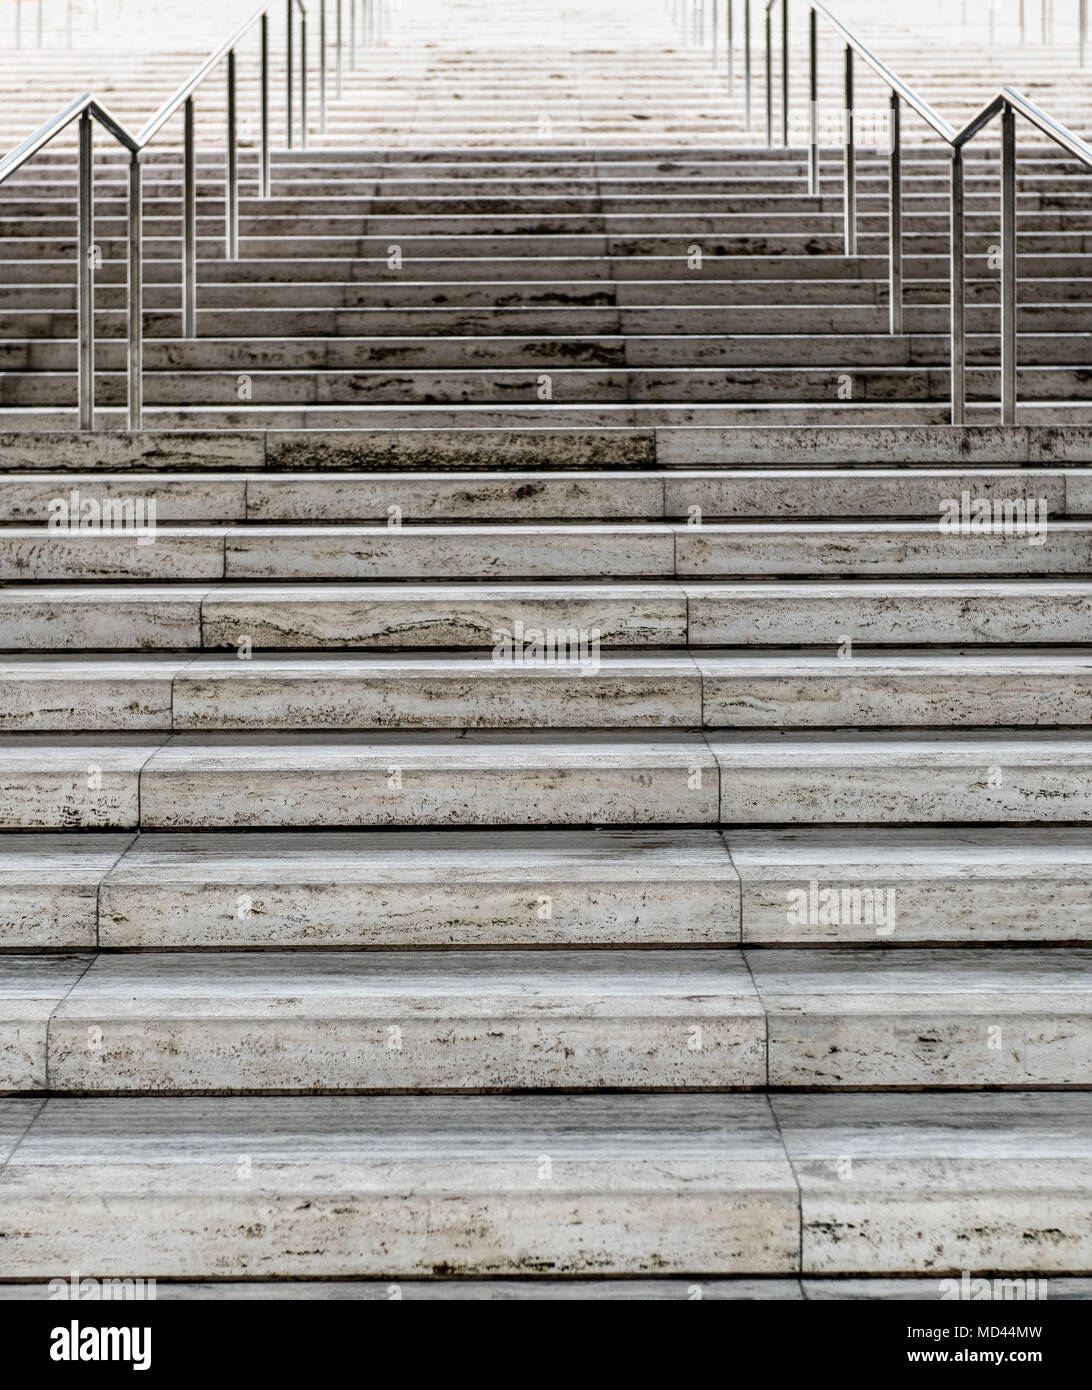 Weißer Marmor Treppe klettern keine Menschen harter langer Weg zum Erfolg Konzept Stockfoto